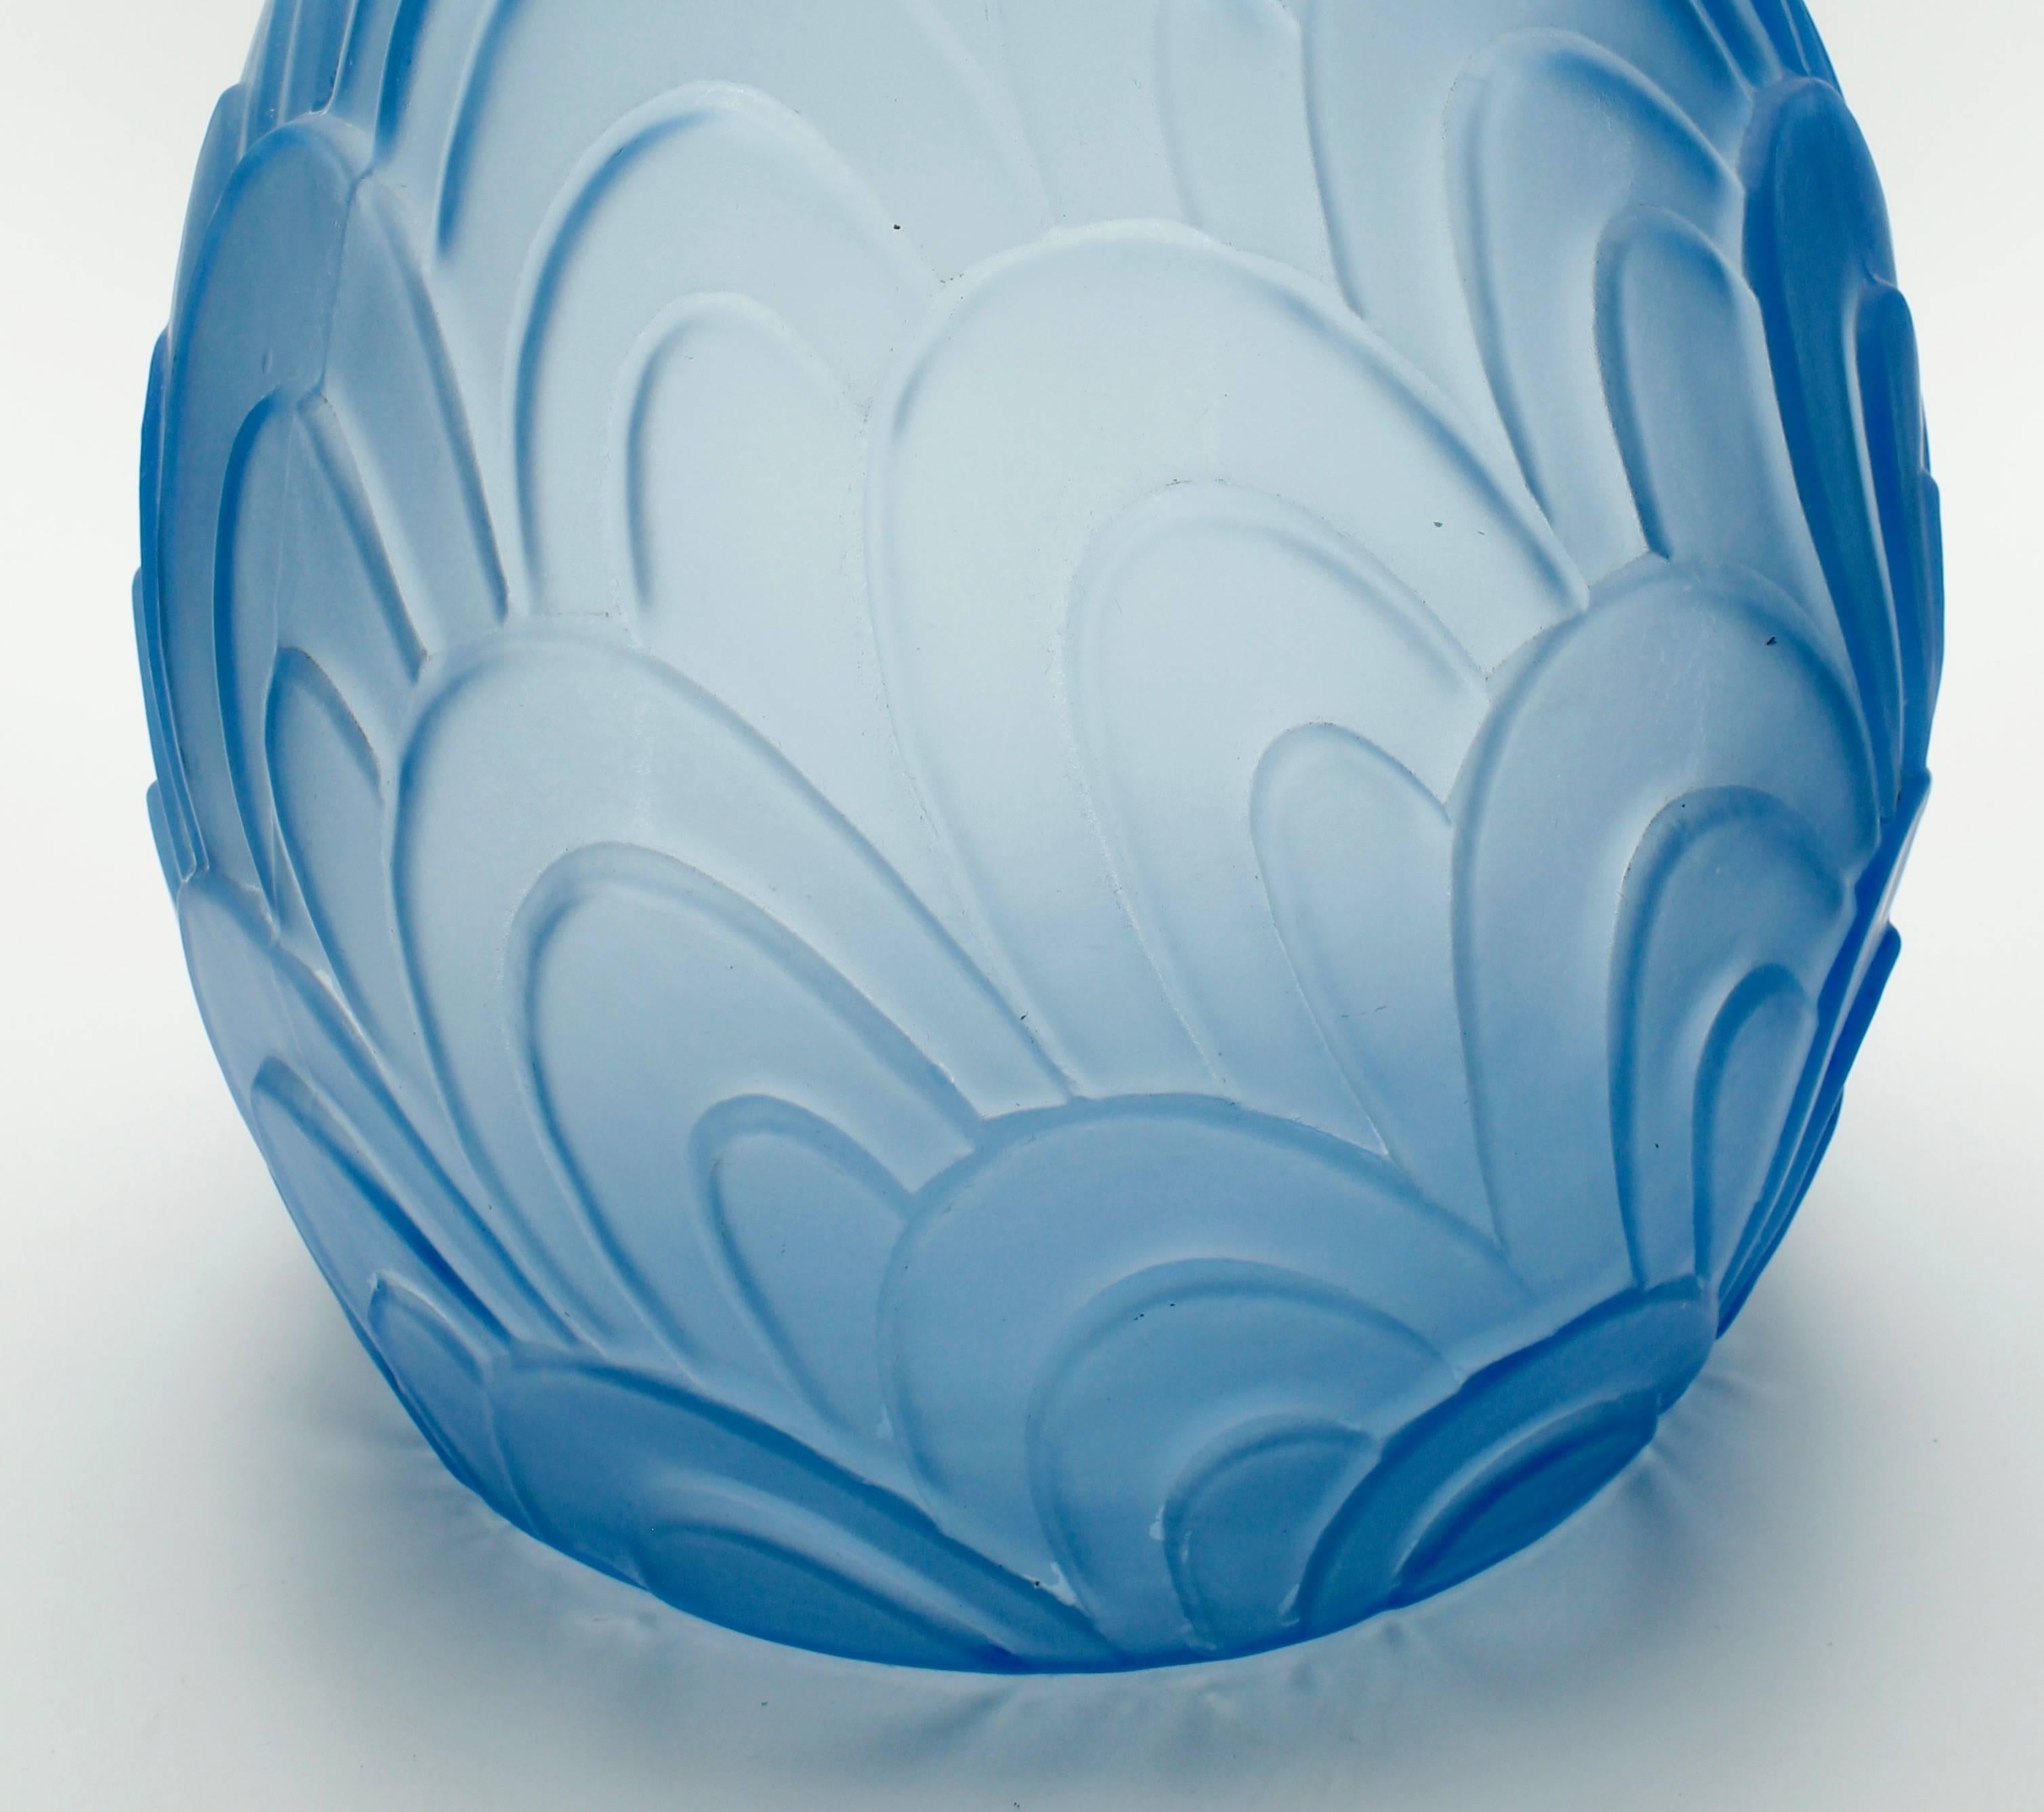 Jugendstil Art Deco Vase, Made of Light-Blue Frosted Pressed Glass, Signed Sars, France